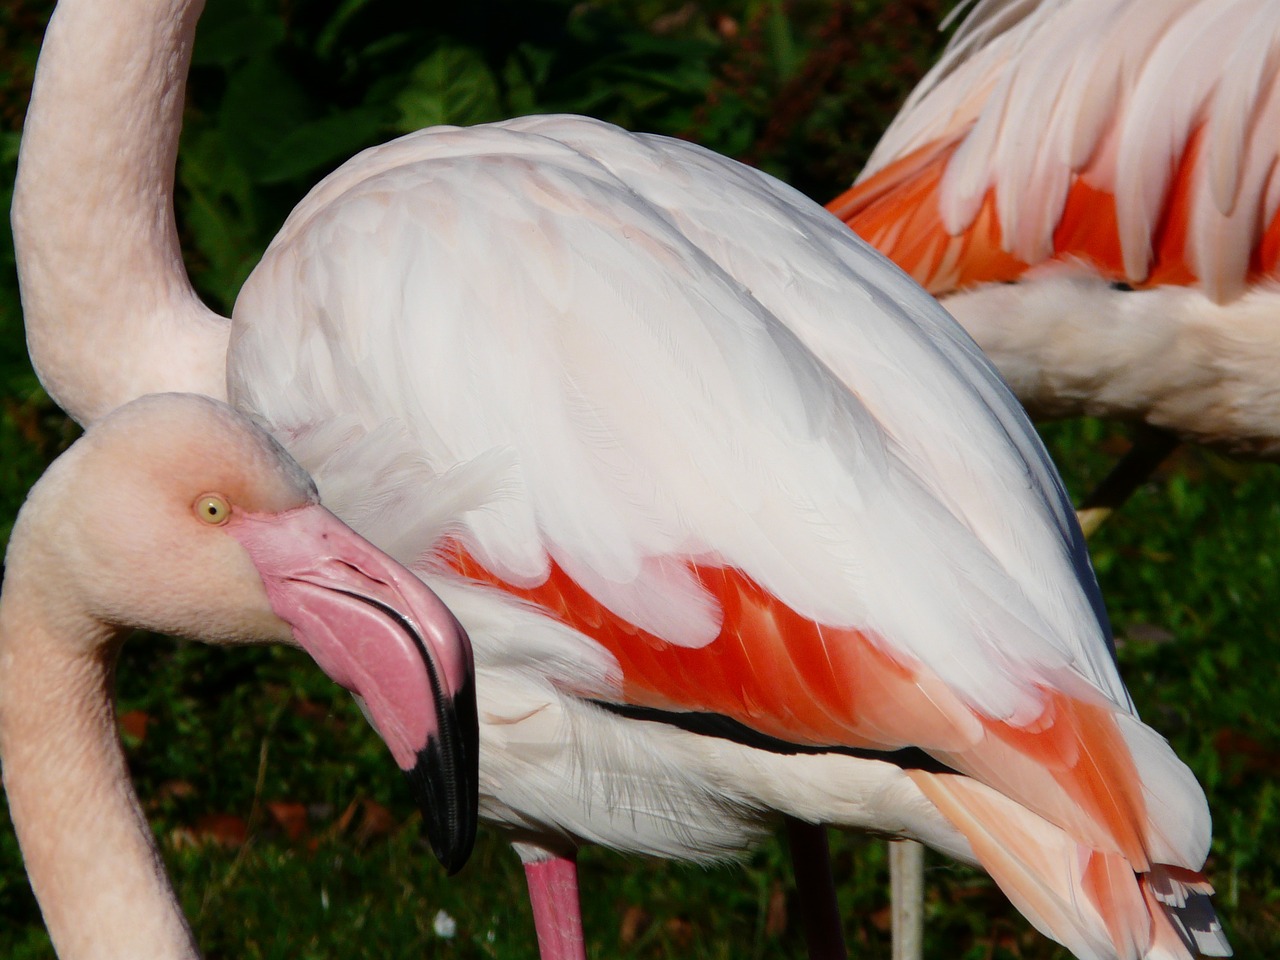 Flamingo, Plumėjimas, Balta, Raudona, Plunksna, Oranžinė, Rožinis, Spalvinga, Fenikopteriformas, Phoenicopteridae